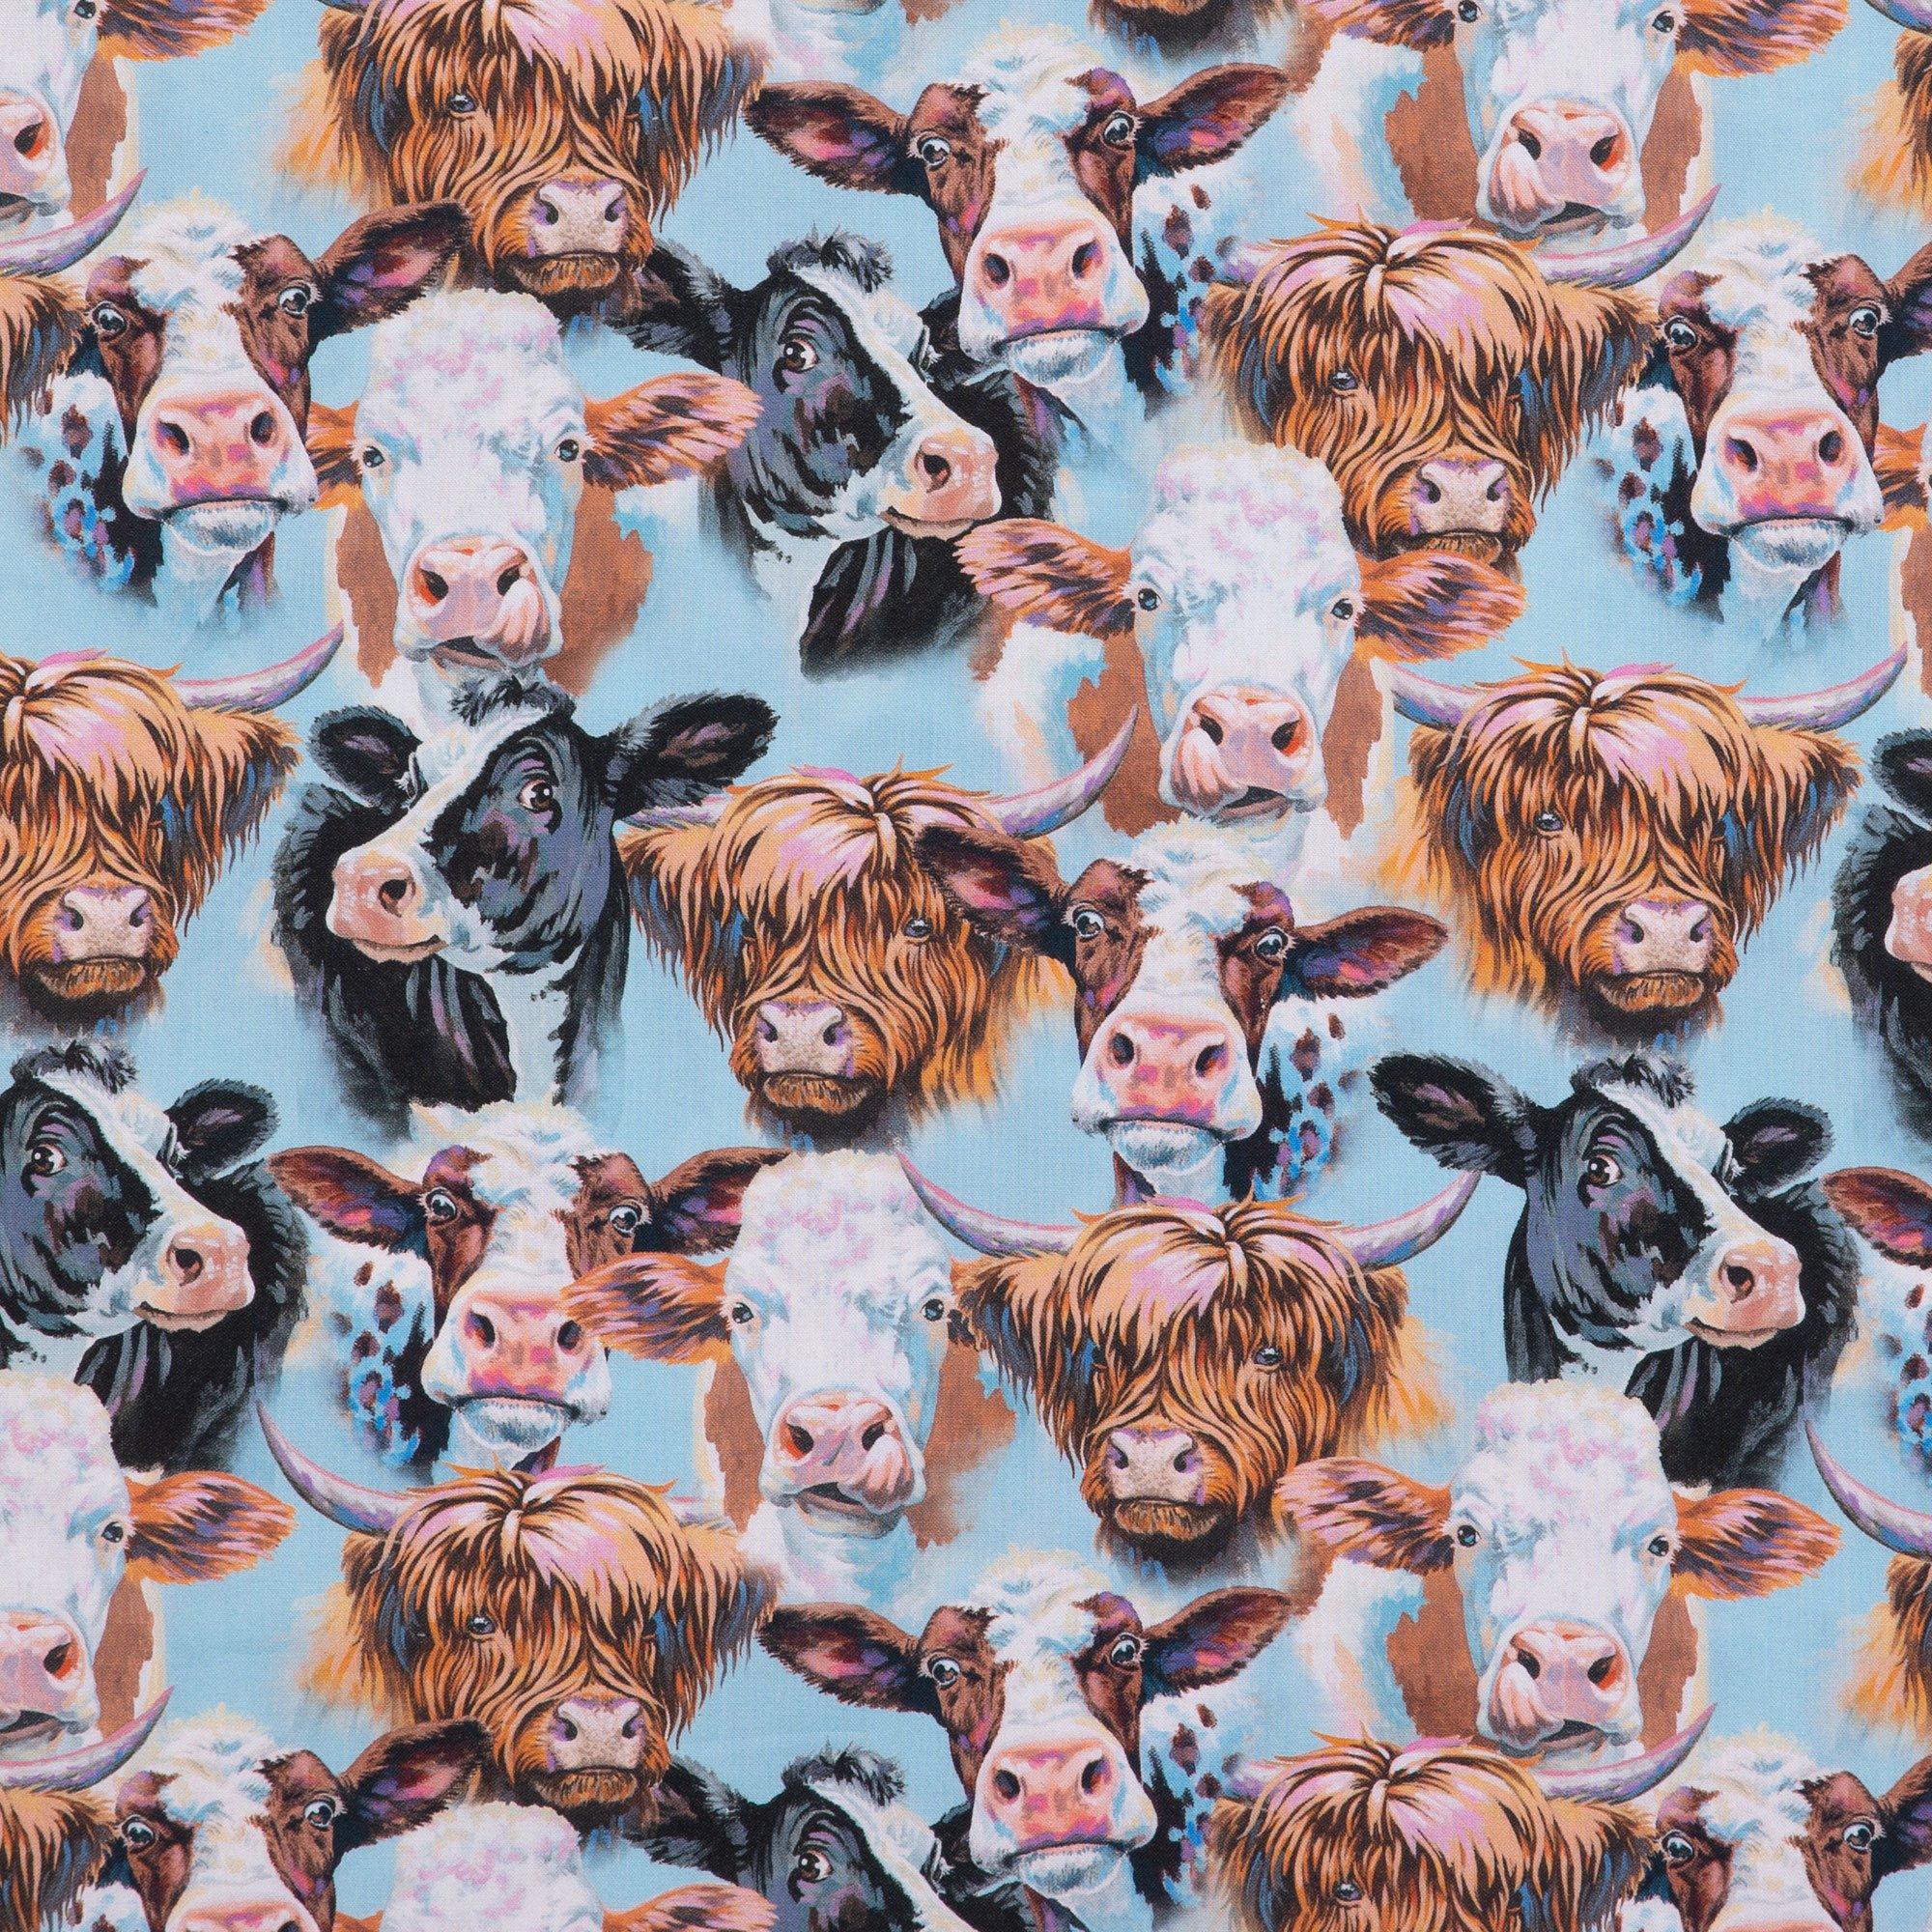 Cow Print Fabric, Hobby Lobby